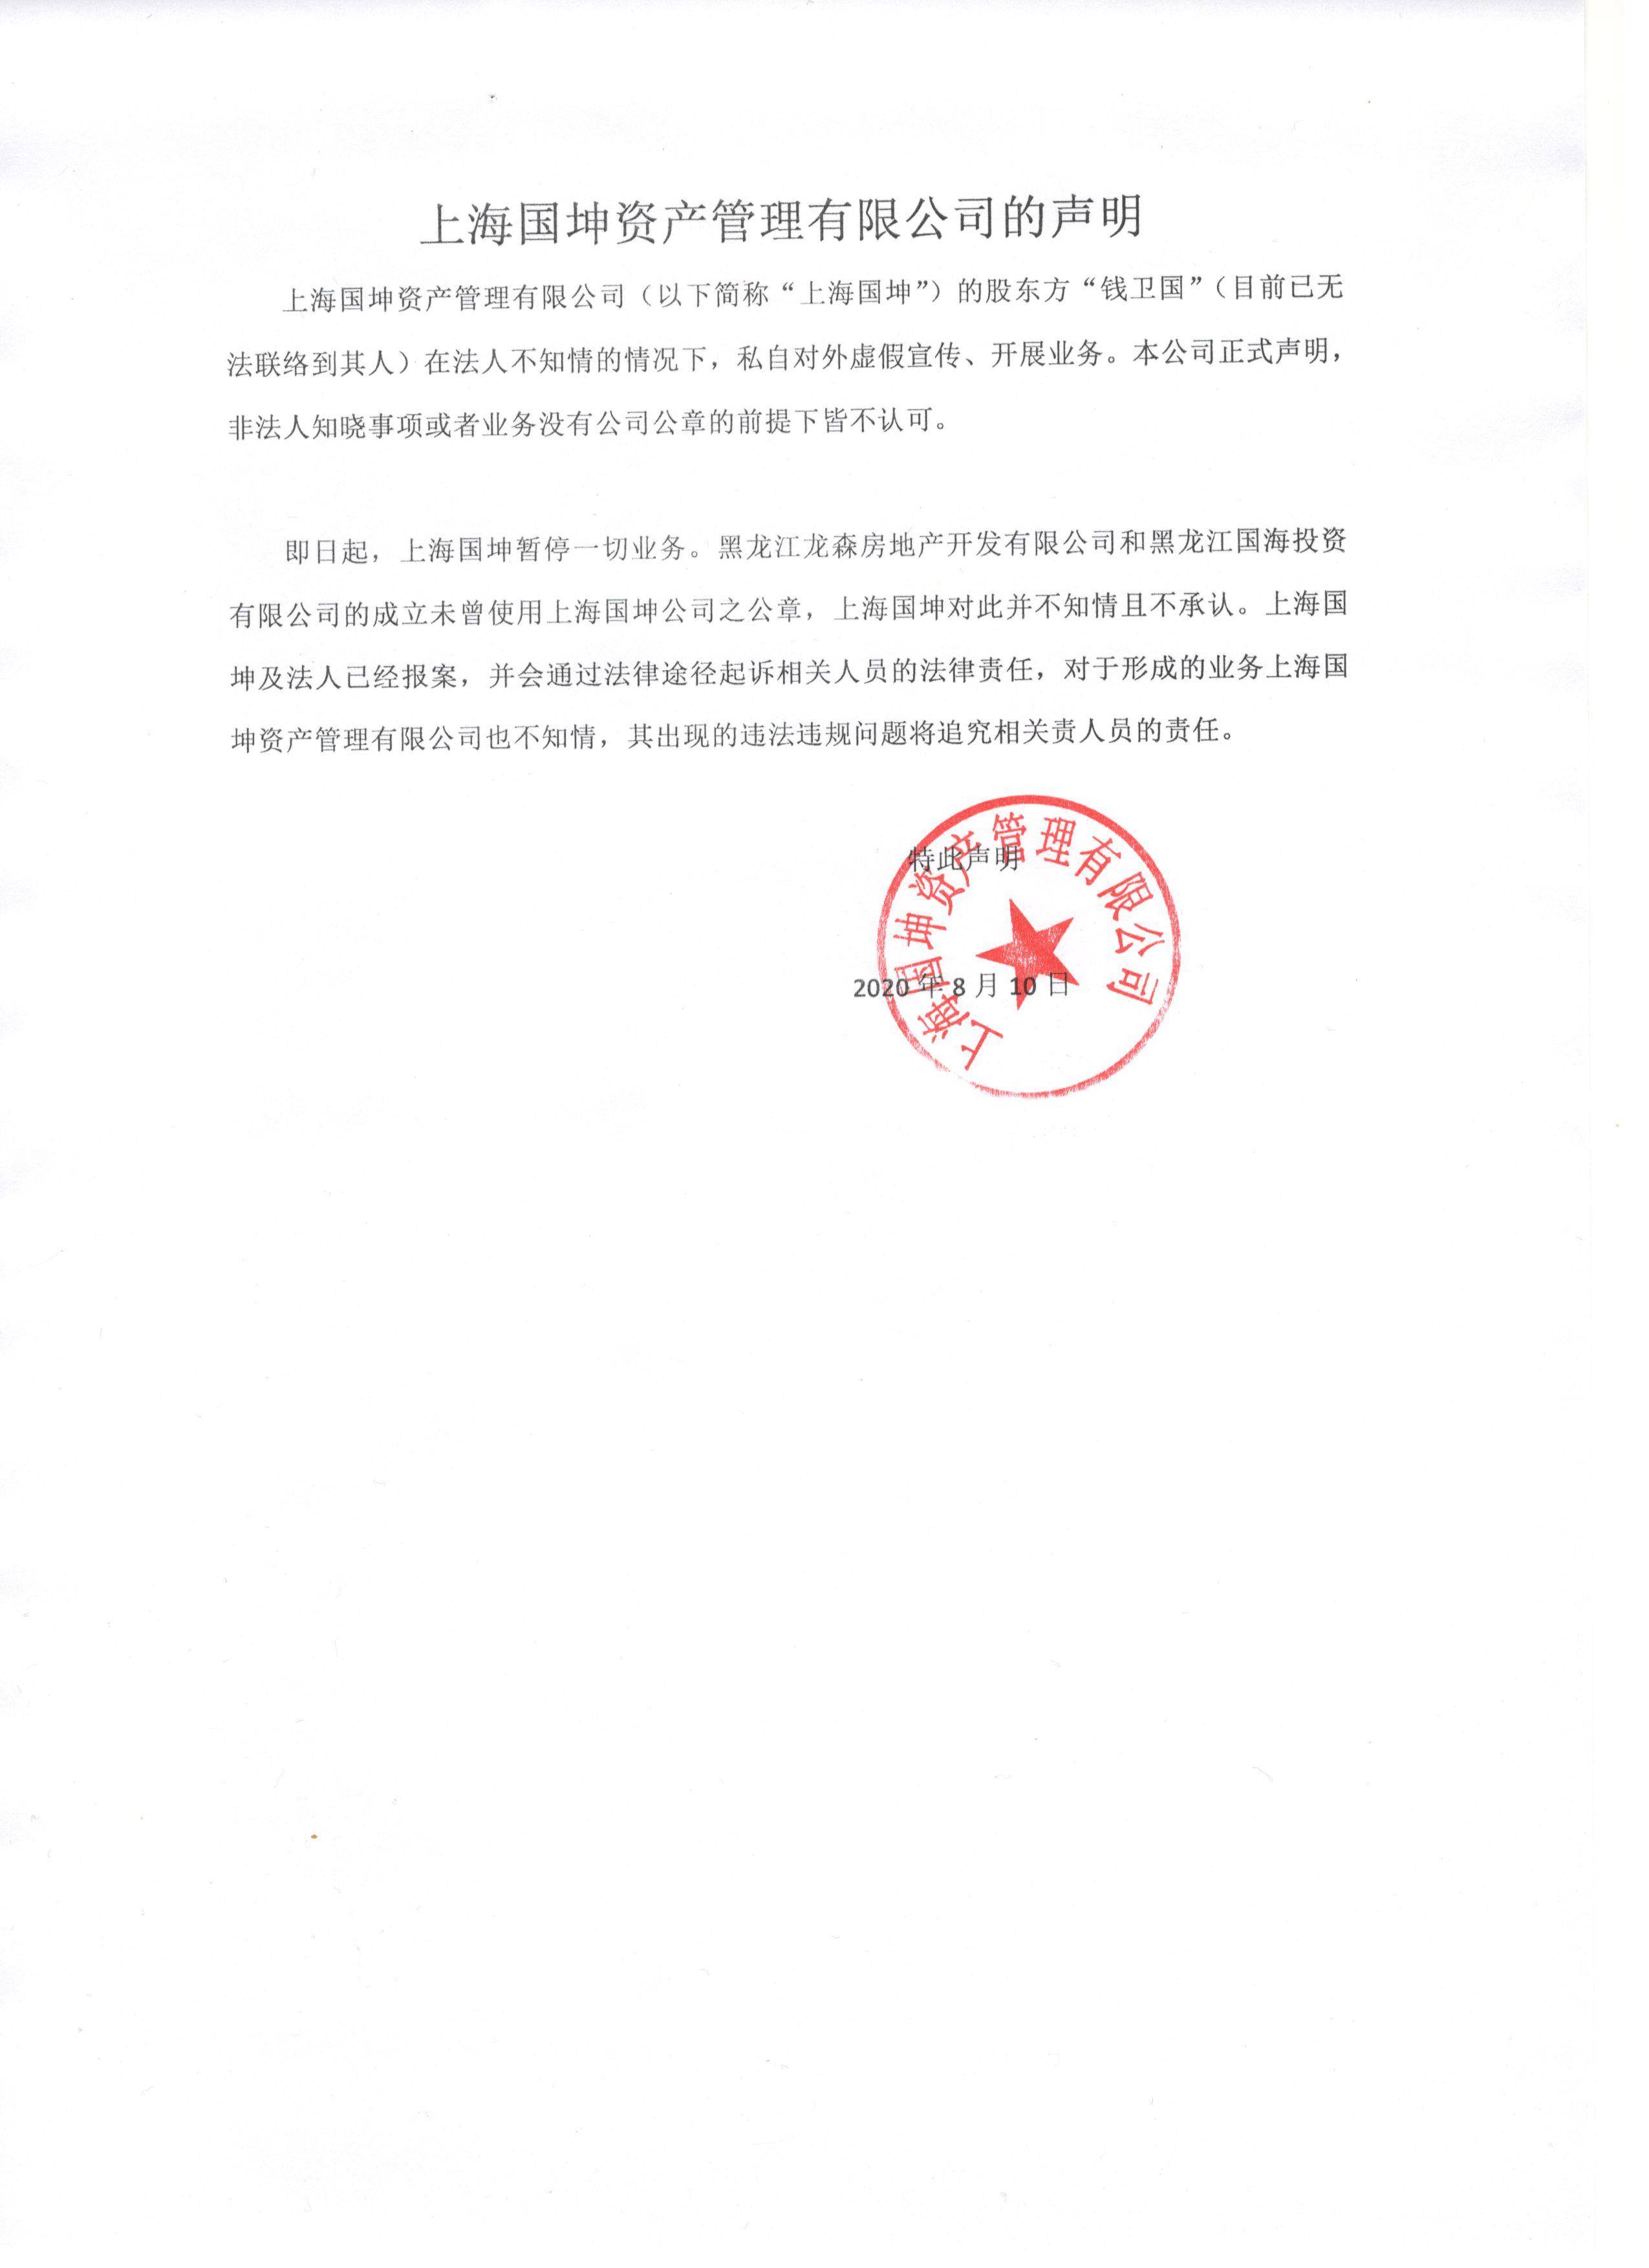 的成立未曾使用上海国坤公司之公章,上海国坤对此并不知情且不承认